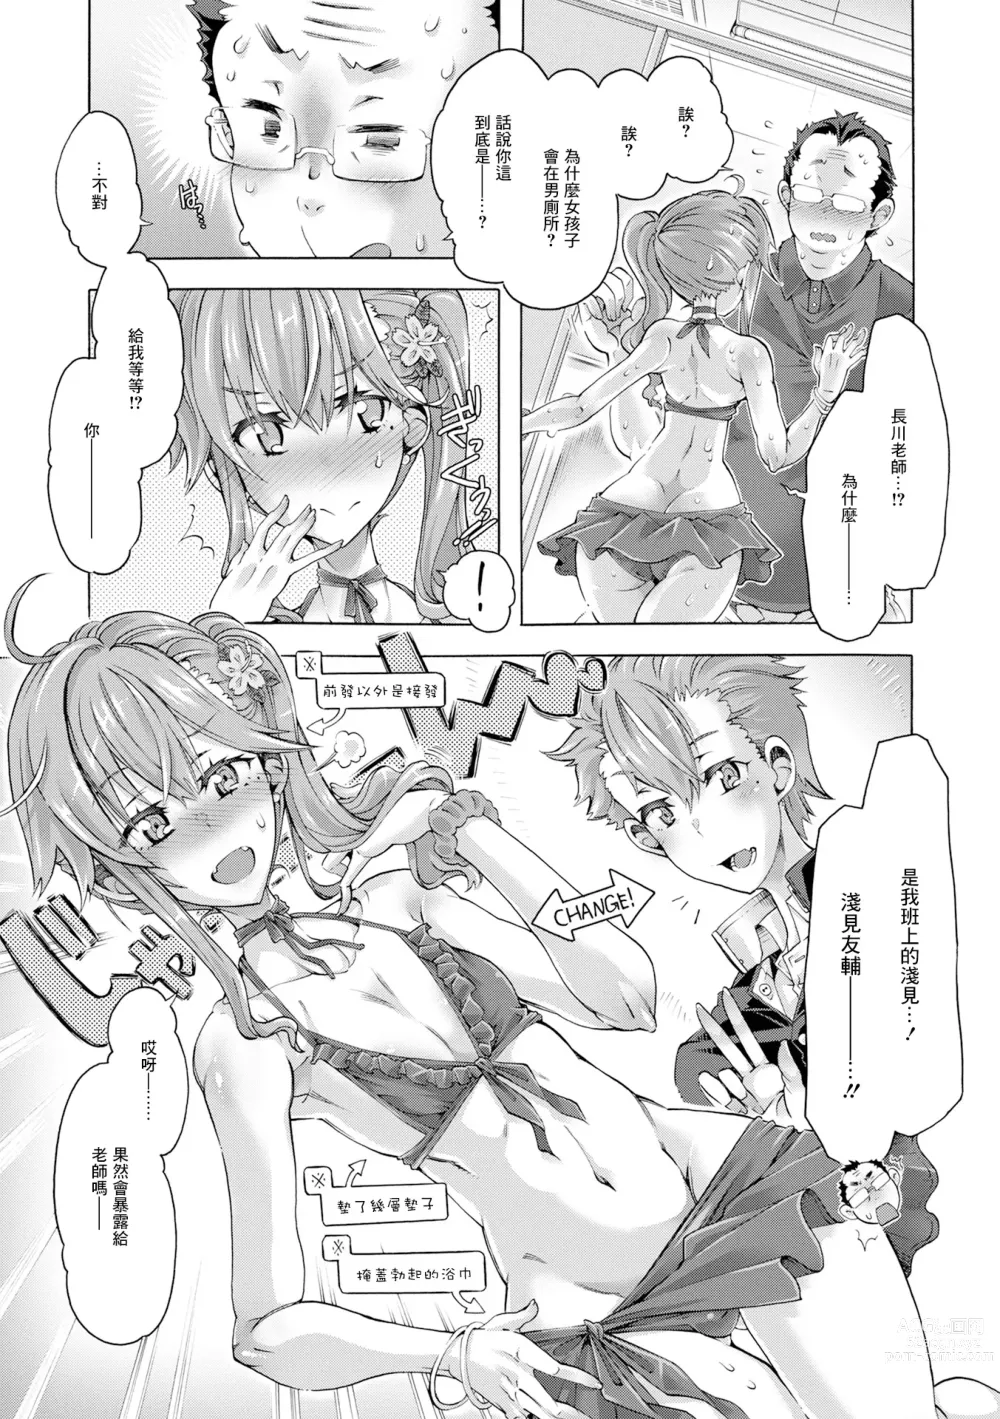 Page 7 of manga Hatsujou Maniacs